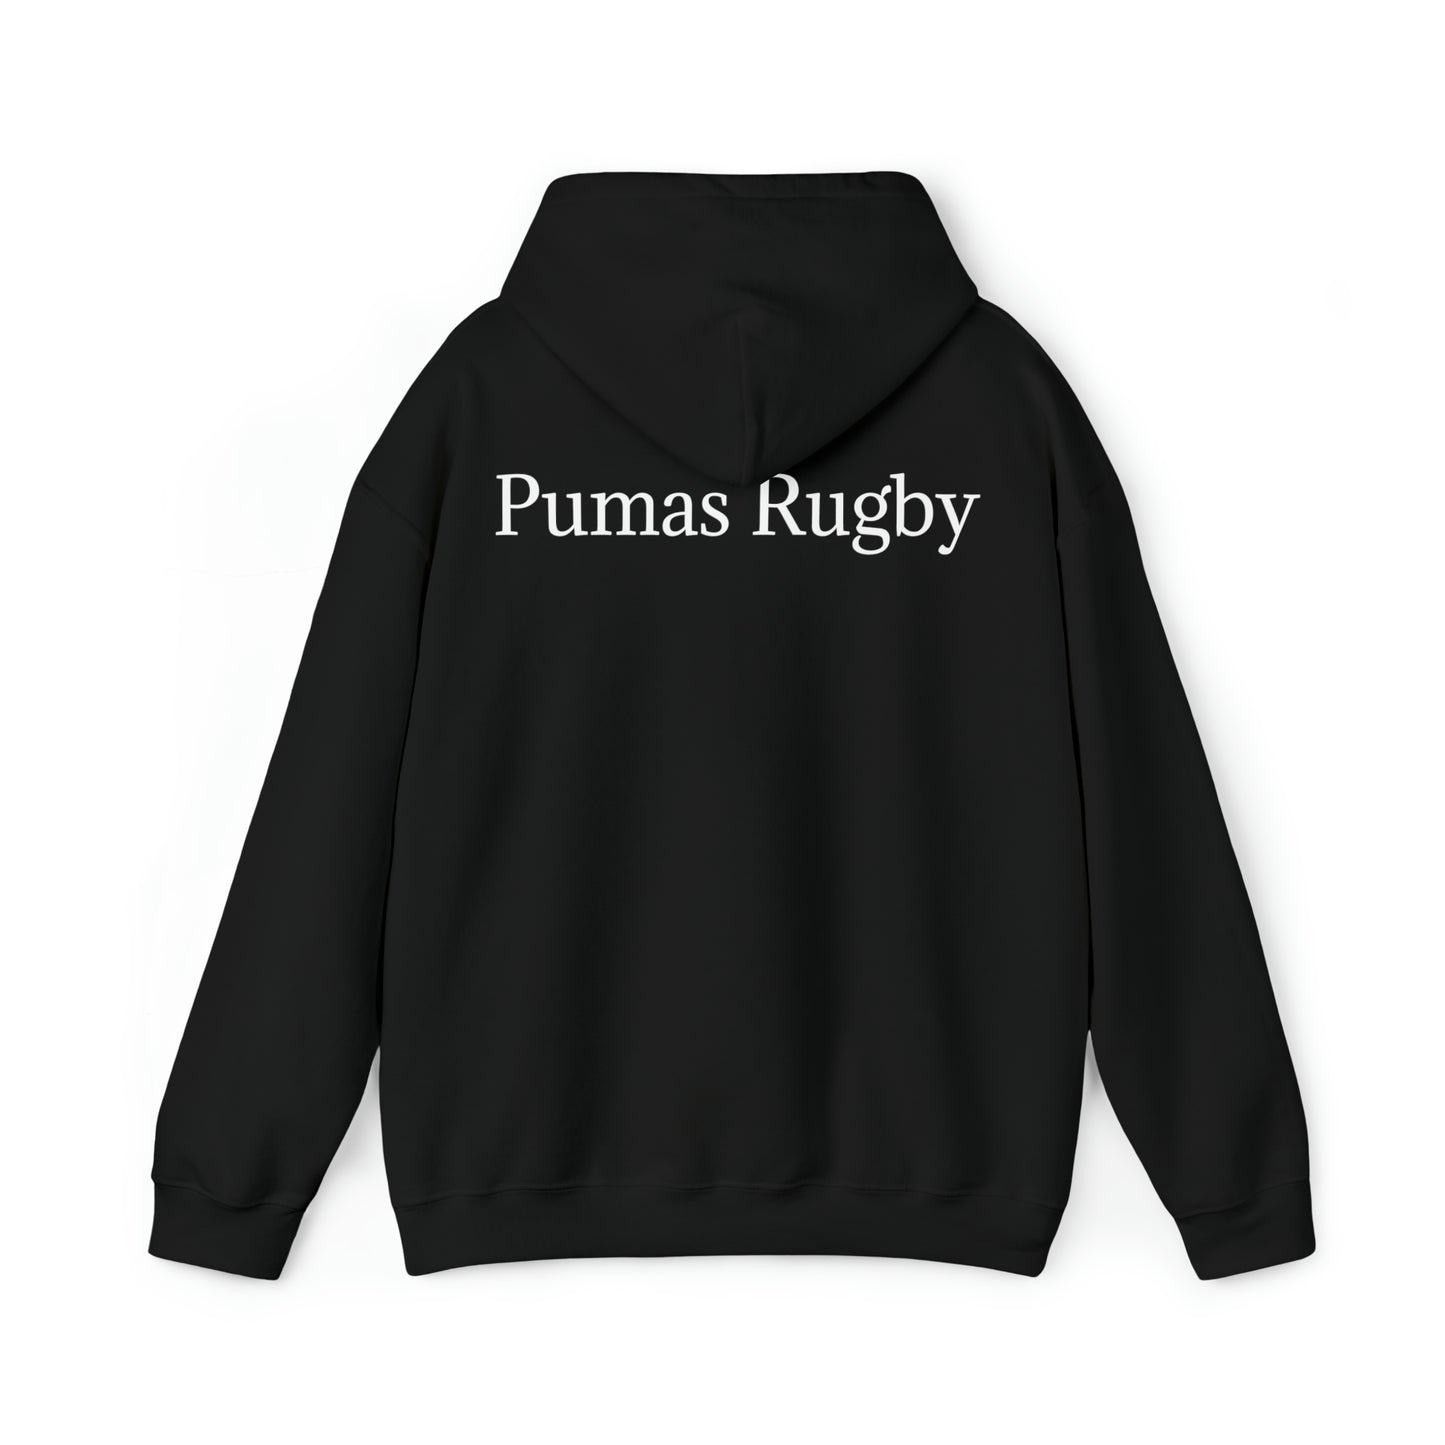 Rugby Maradona - black hoodie